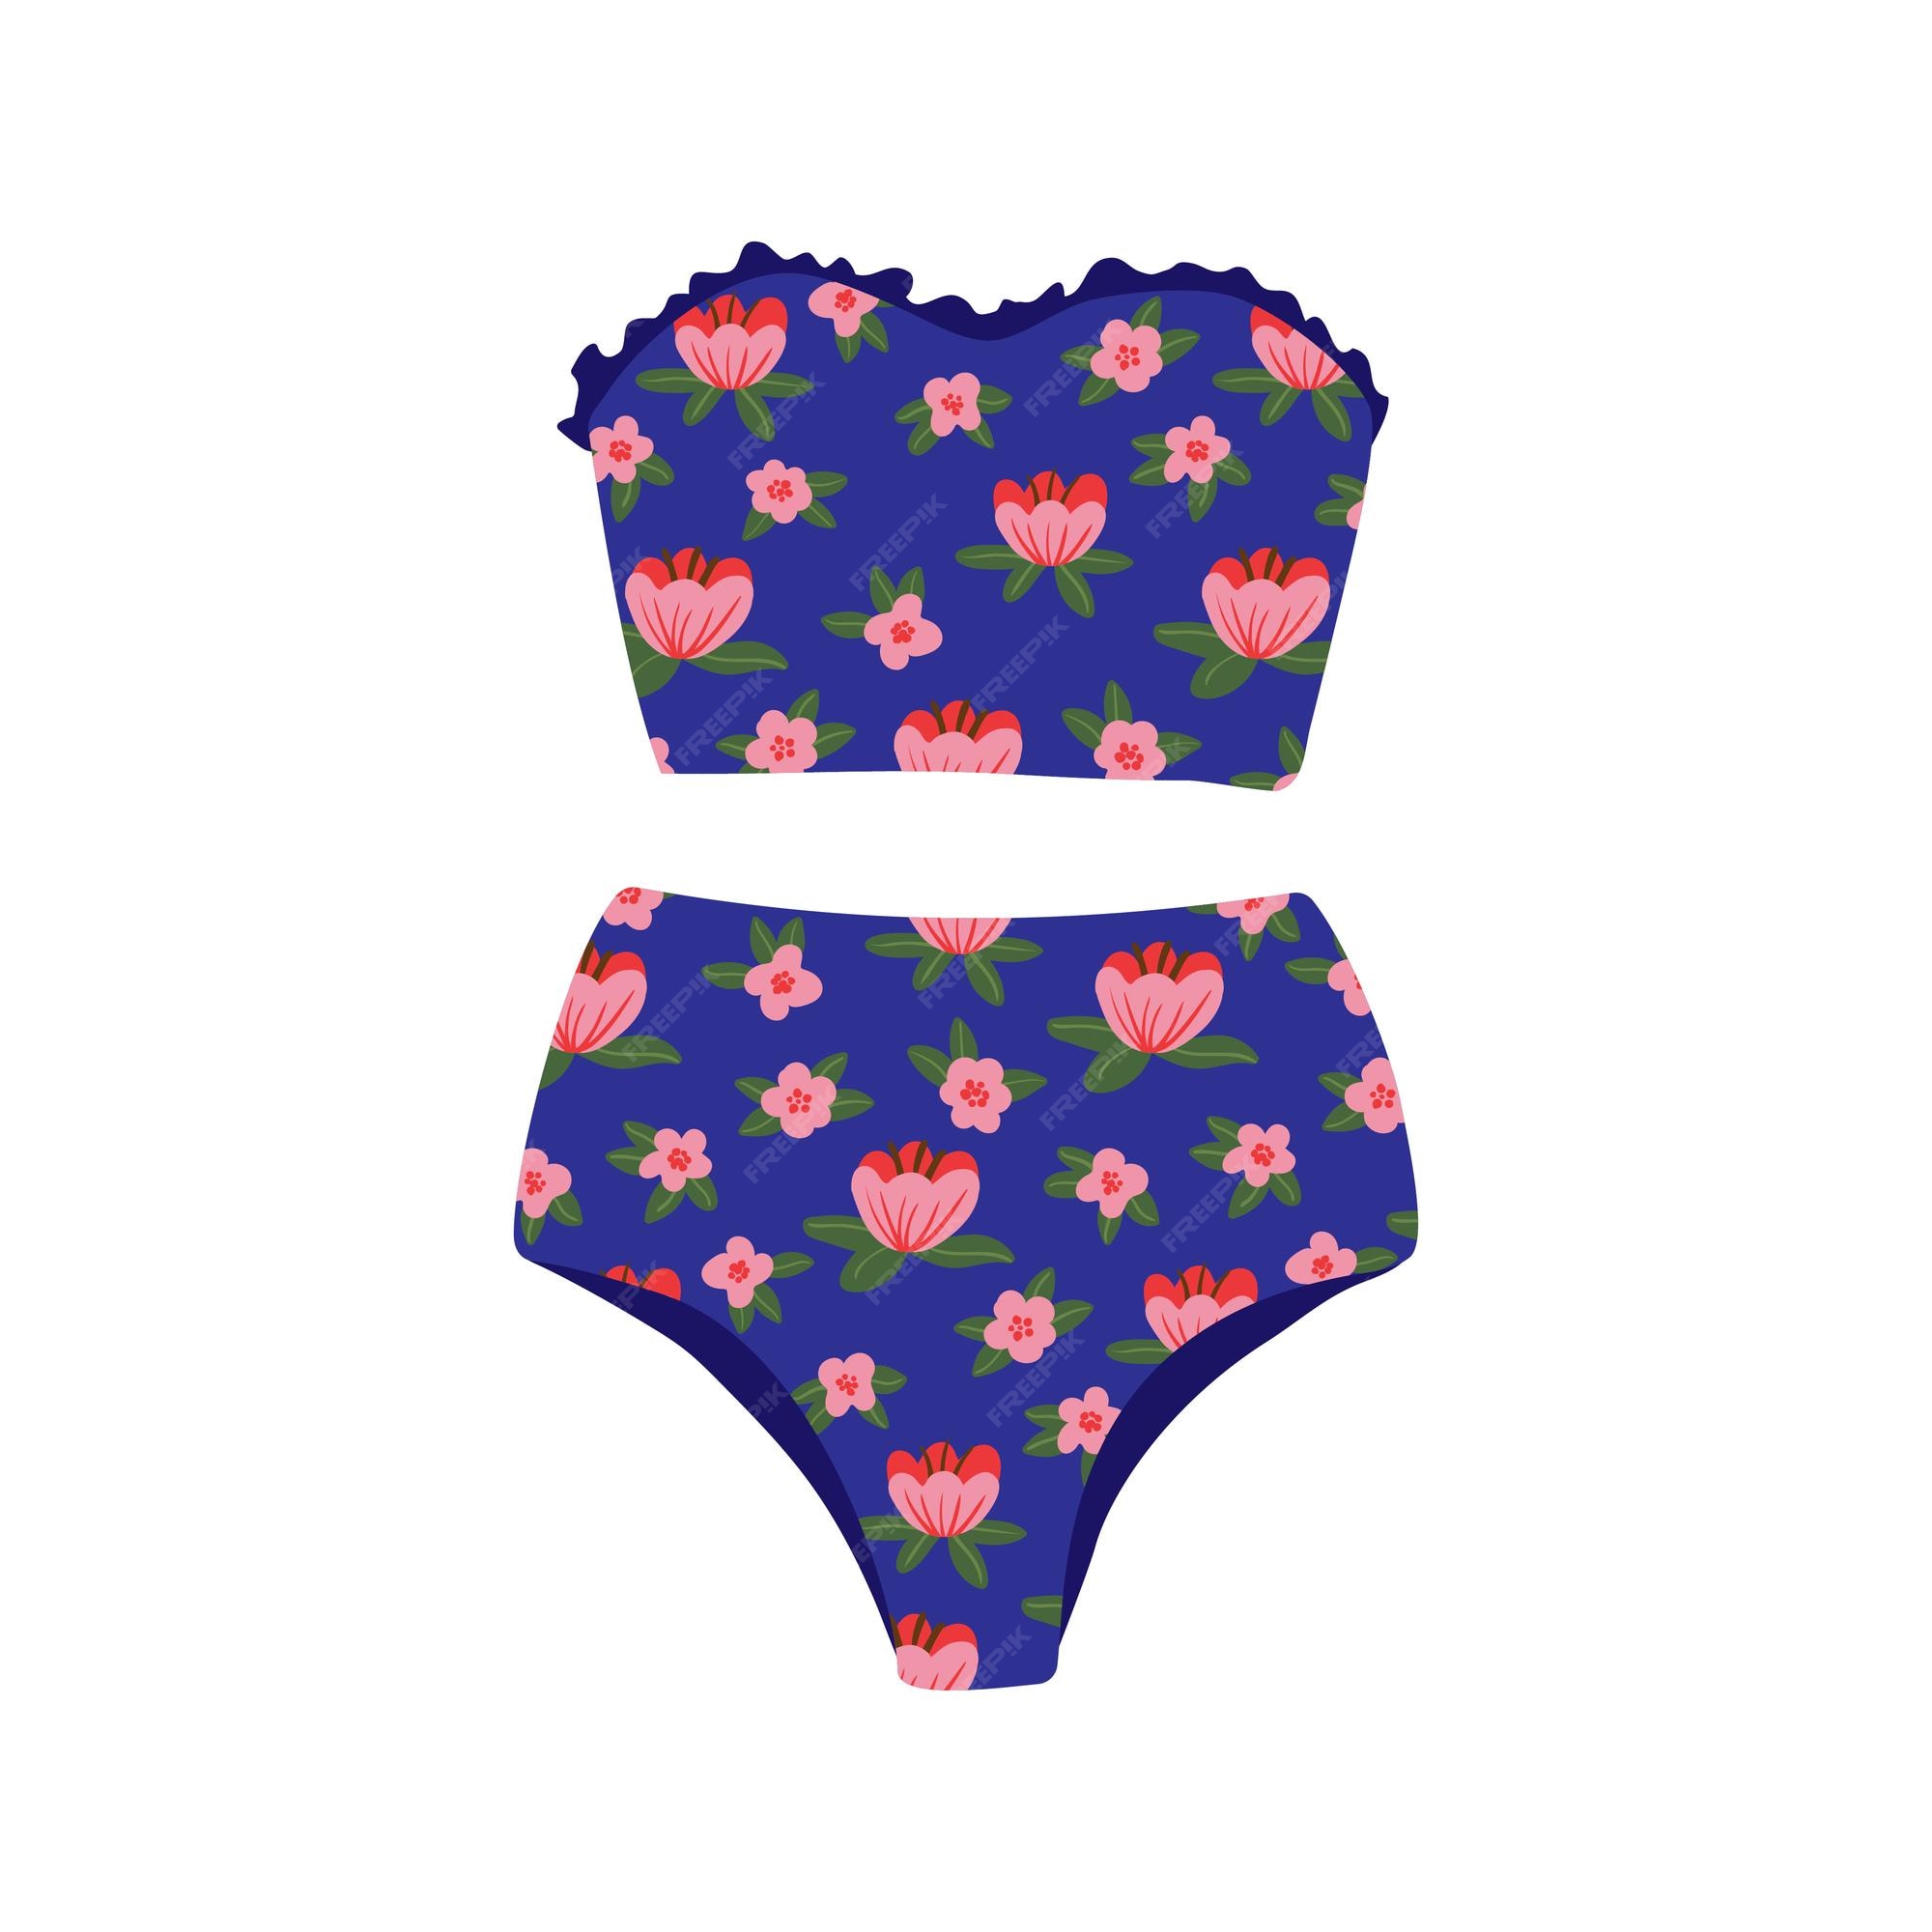 Traje de baño dos piezas femenino playa de en estilo retro parte superior e inferior del traje de baño bikini de mujer con patrón ilustración de vector colorido de